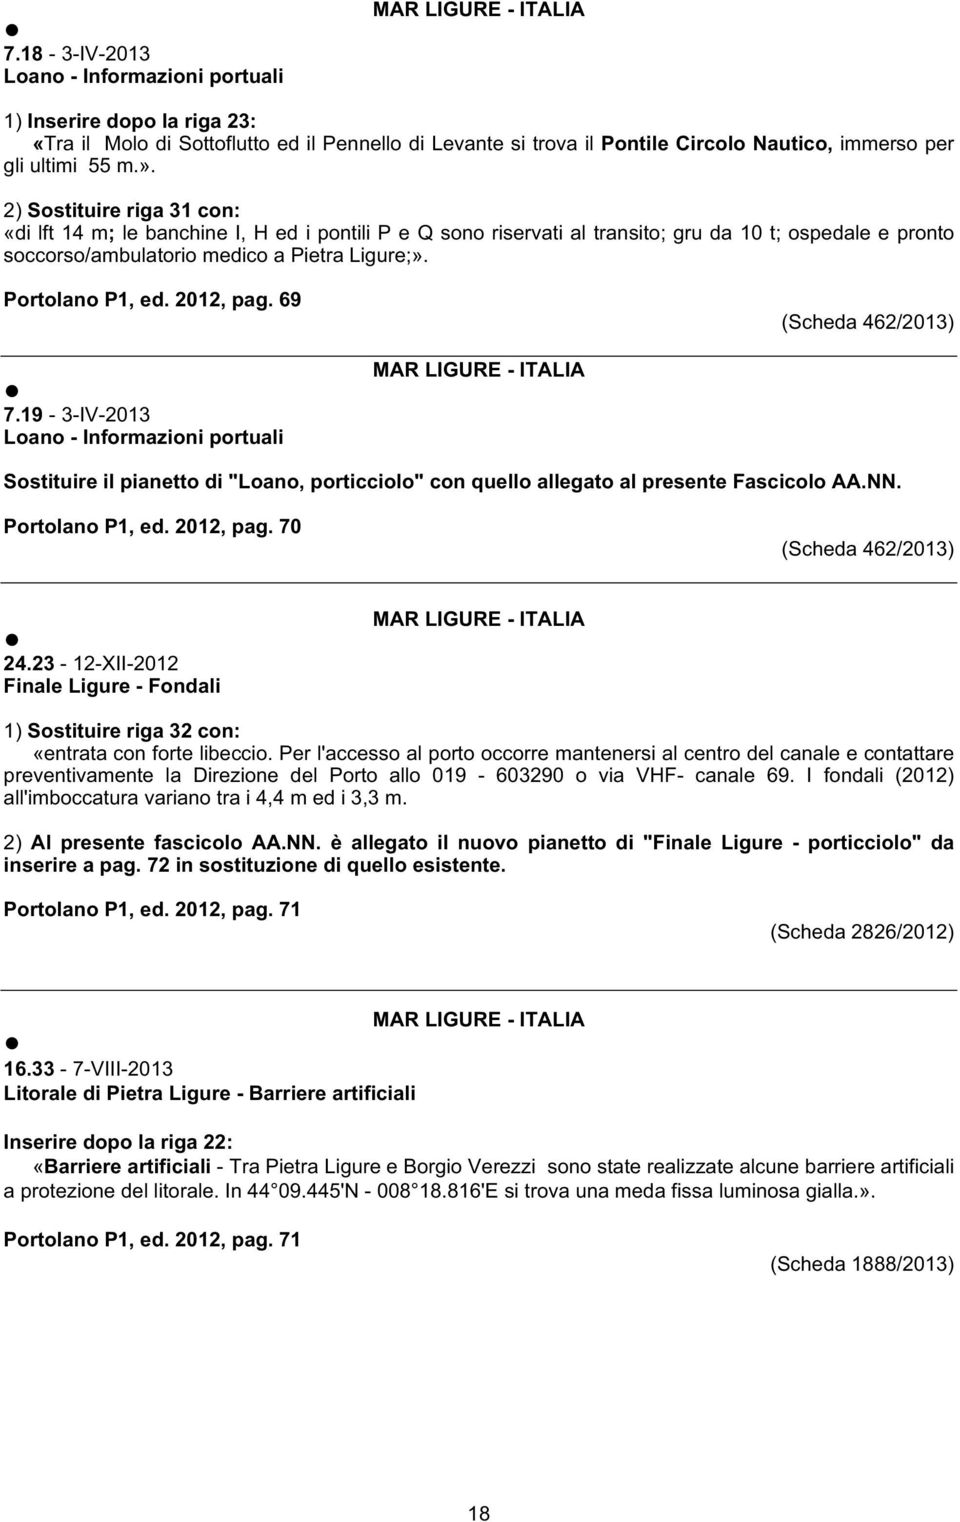 2012, pag. 69 (Scheda 462/2013) 7.19-3-IV-2013 Loano - Informazioni portuali Sostituire il pianetto di "Loano, porticciolo" con quello allegato al presente Fascicolo AA.NN. Portolano P1, ed.